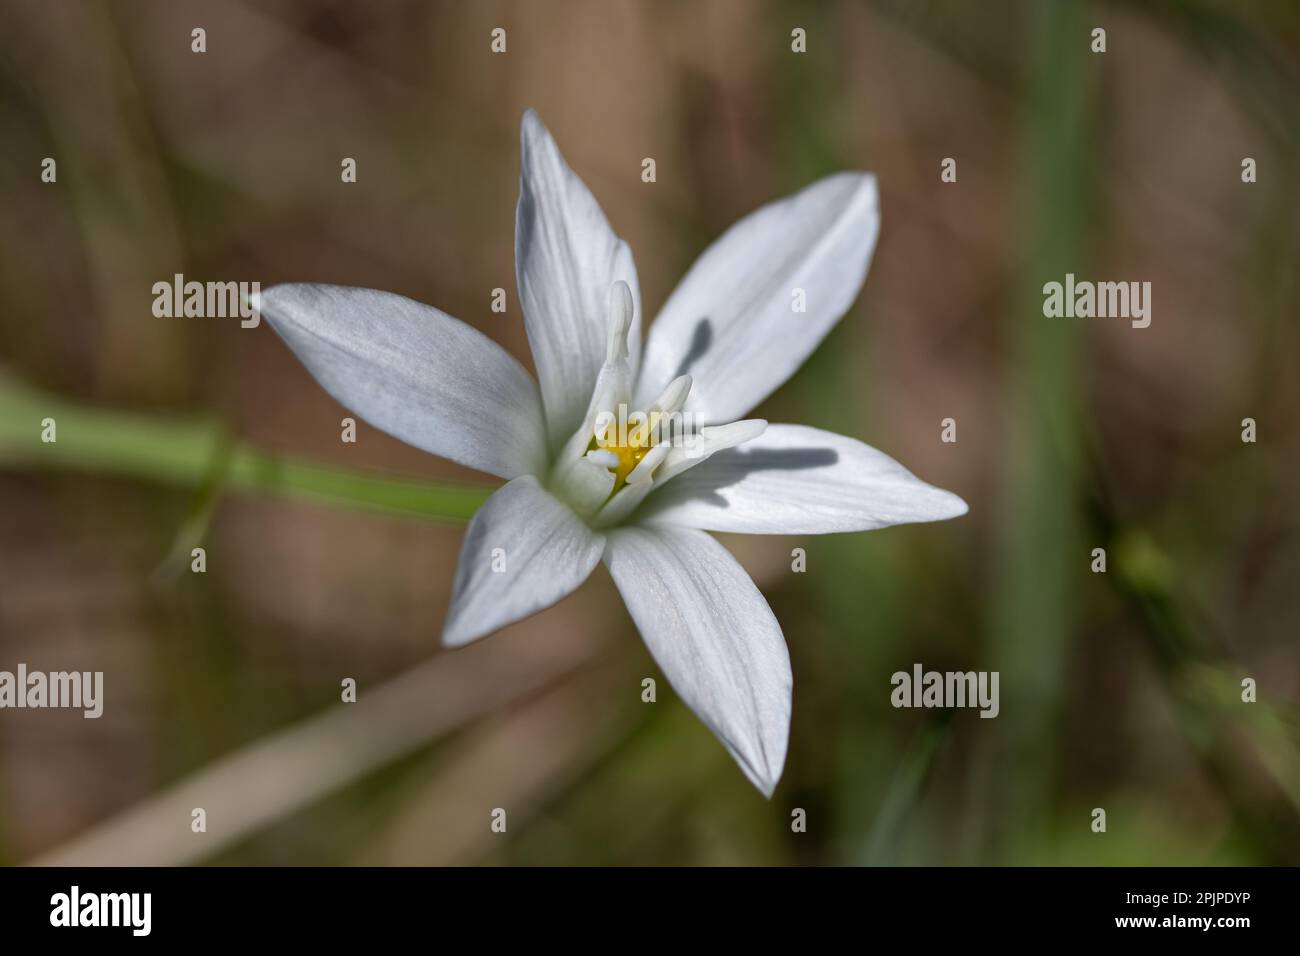 Spring white flower, Star of Bethlehem flower Stock Photo